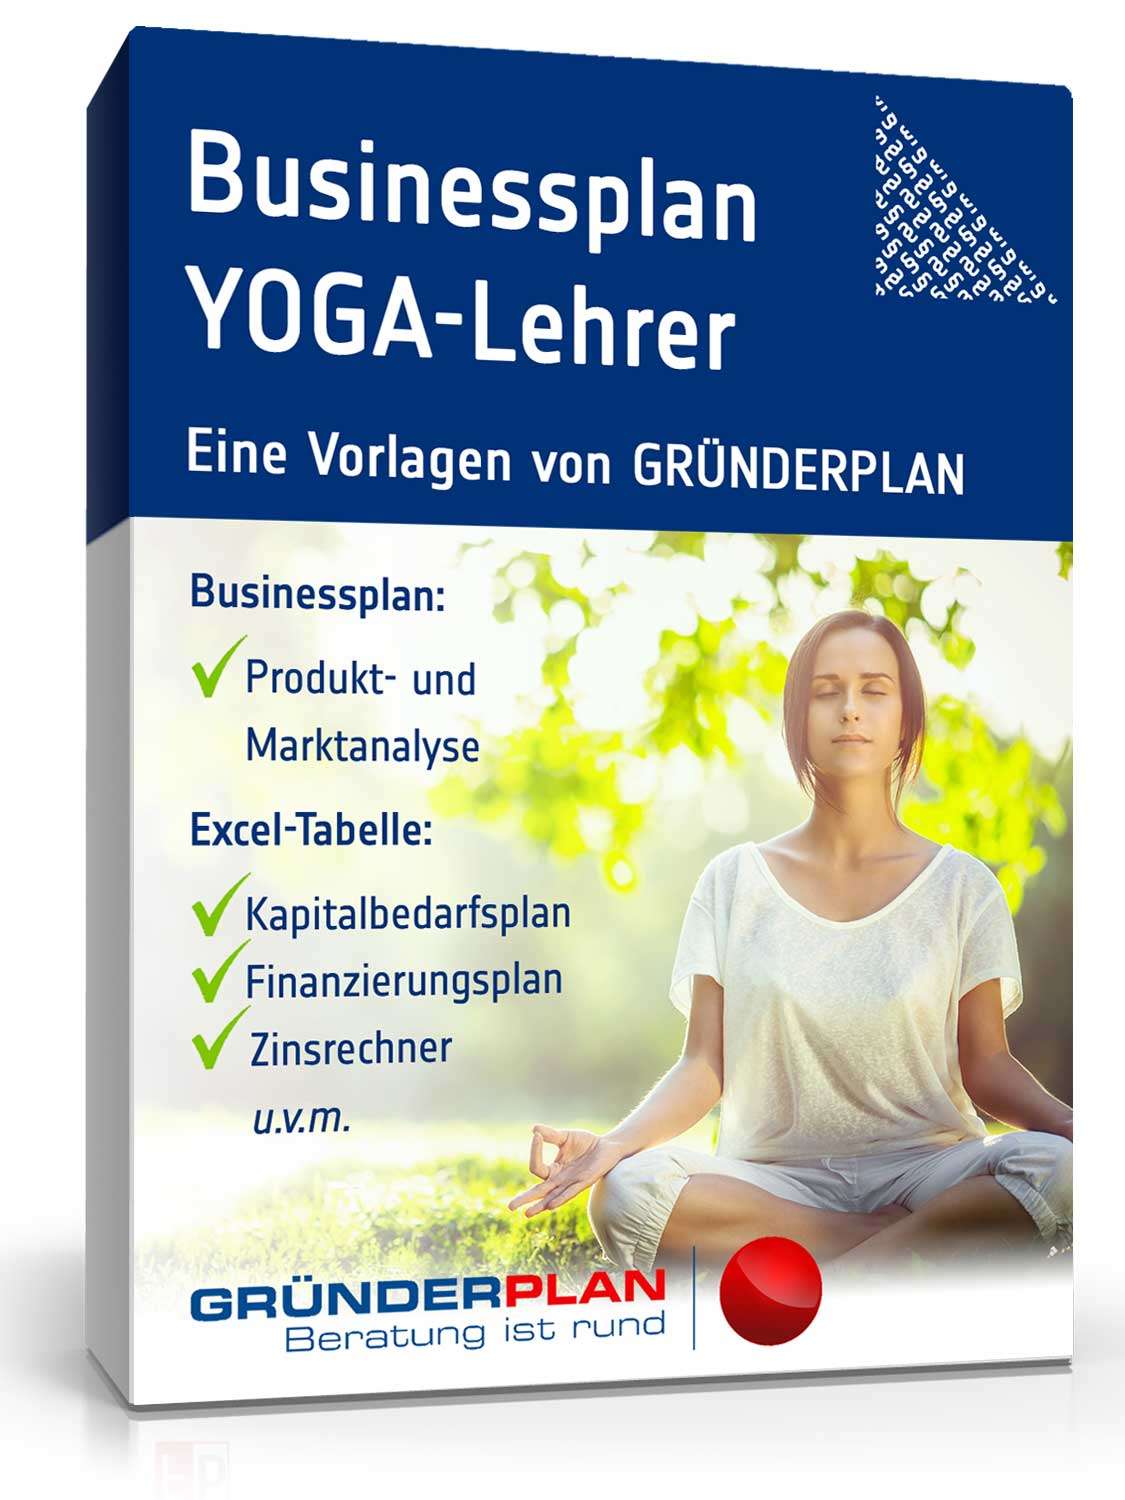 Hauptbild des Produkts: Businessplan YOGA-Lehrer von Gründerplan